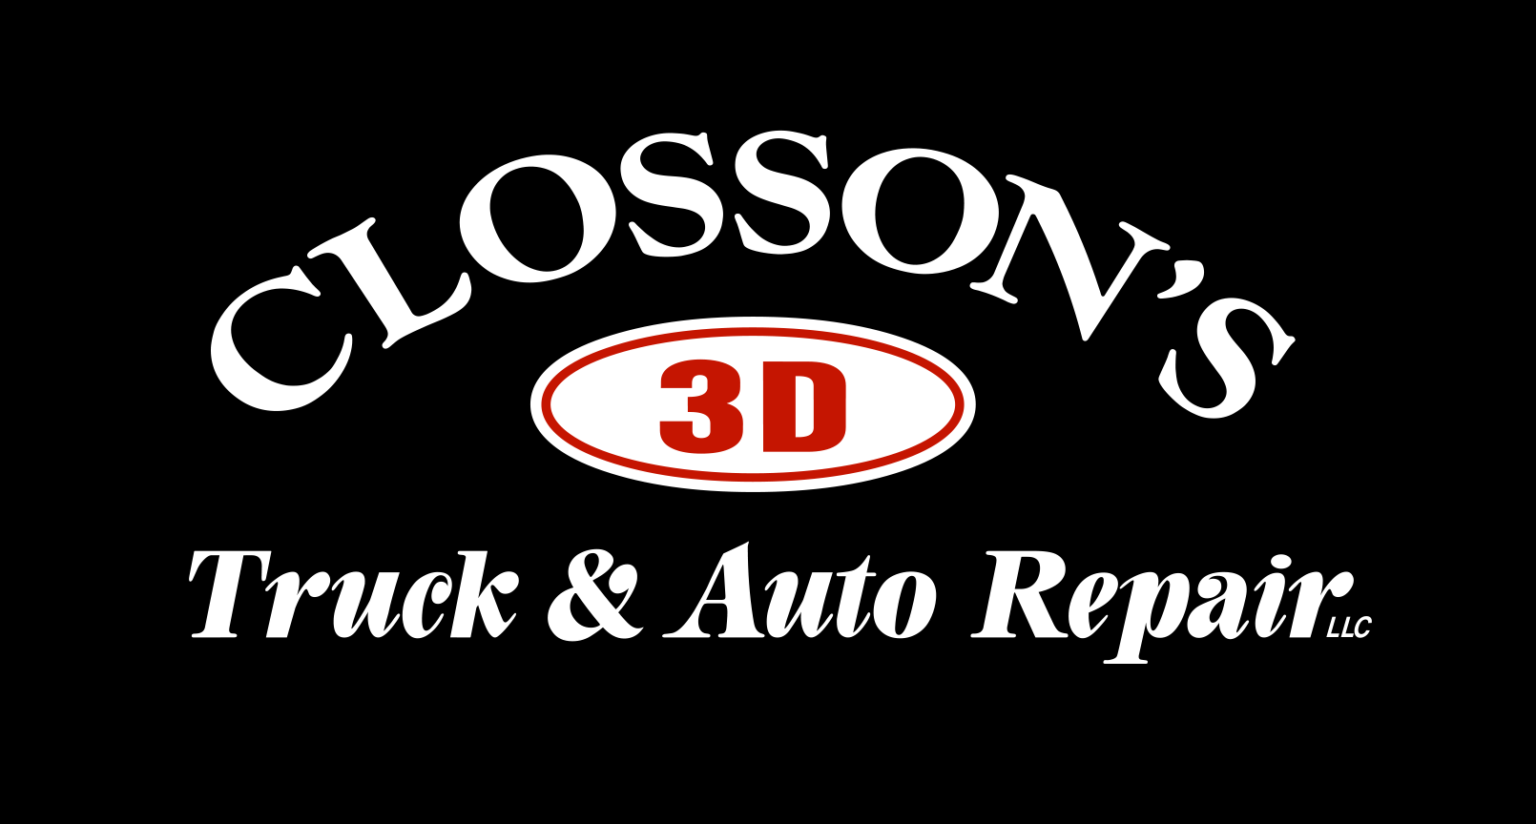 Closson’s 3D Truck Repair